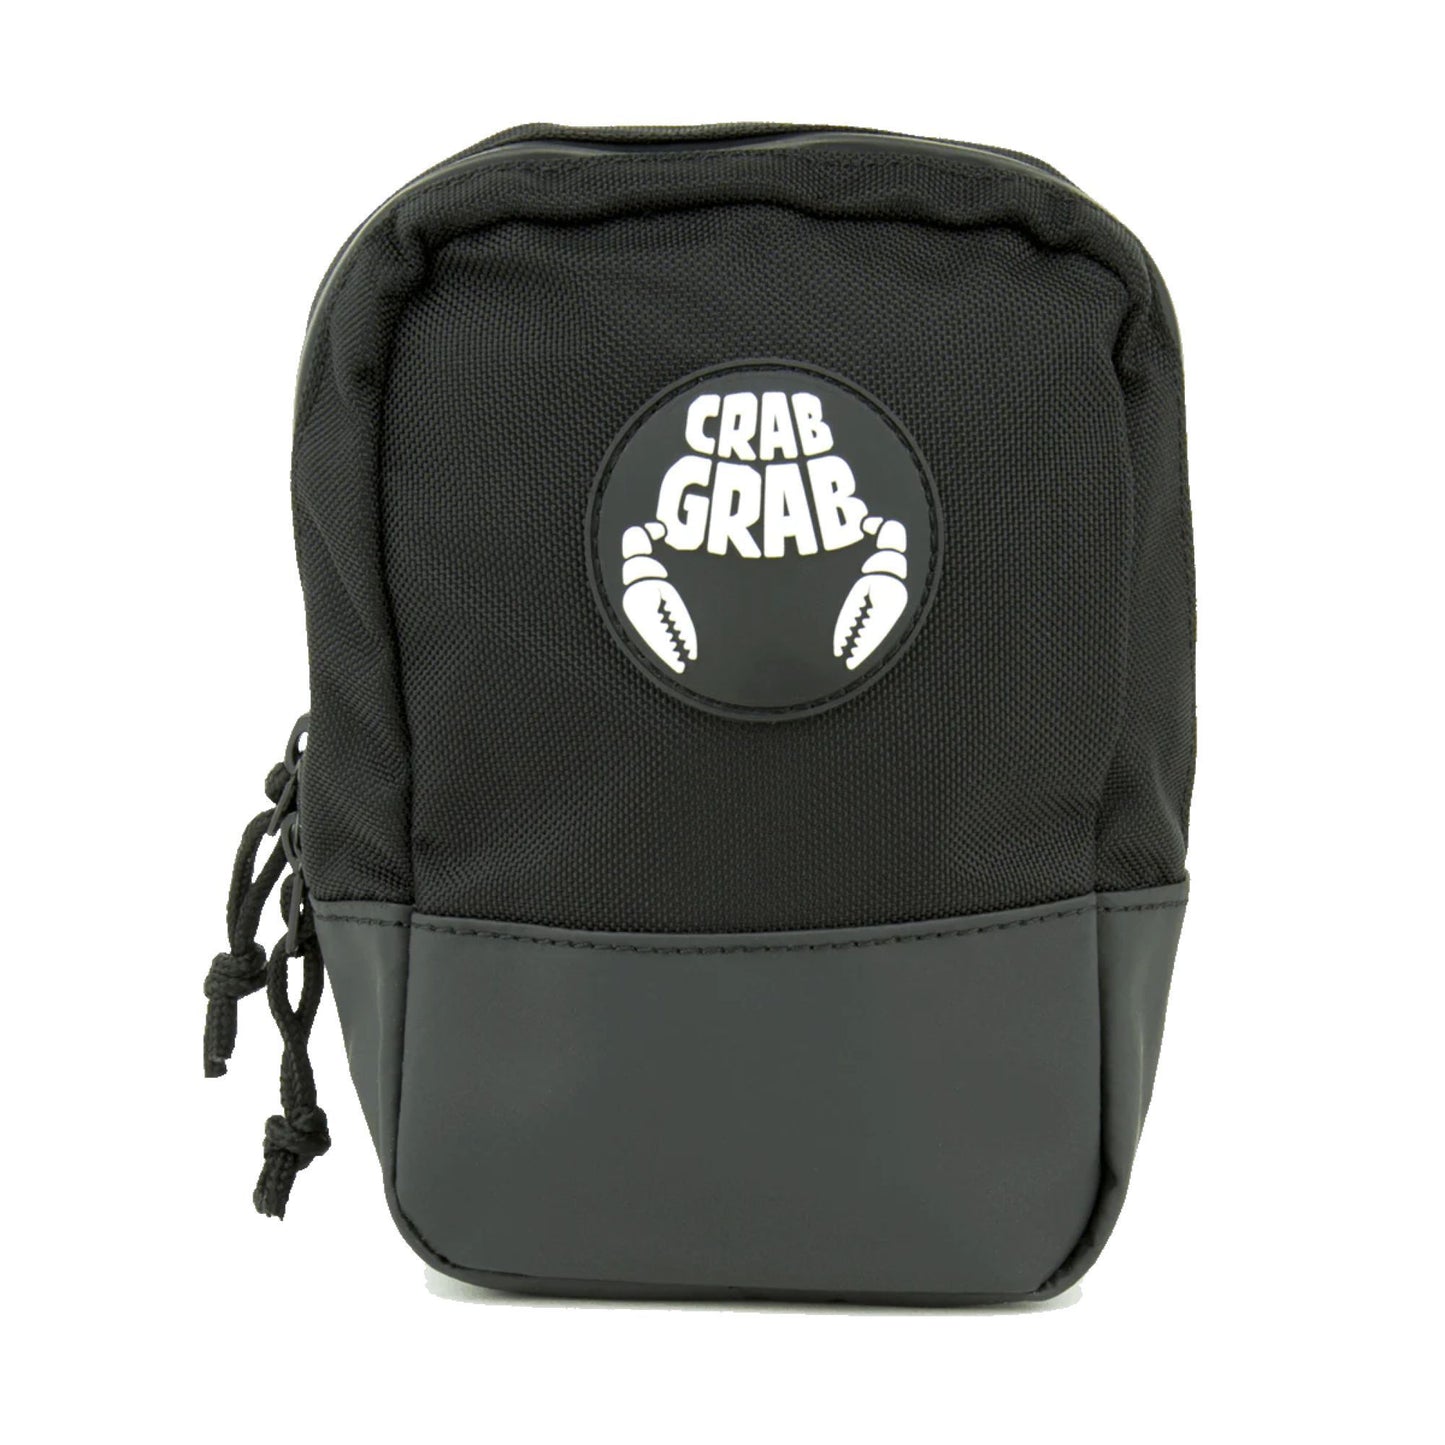 Crab Grab Binding Bag Black OS - Crab Grab Bags & Packs